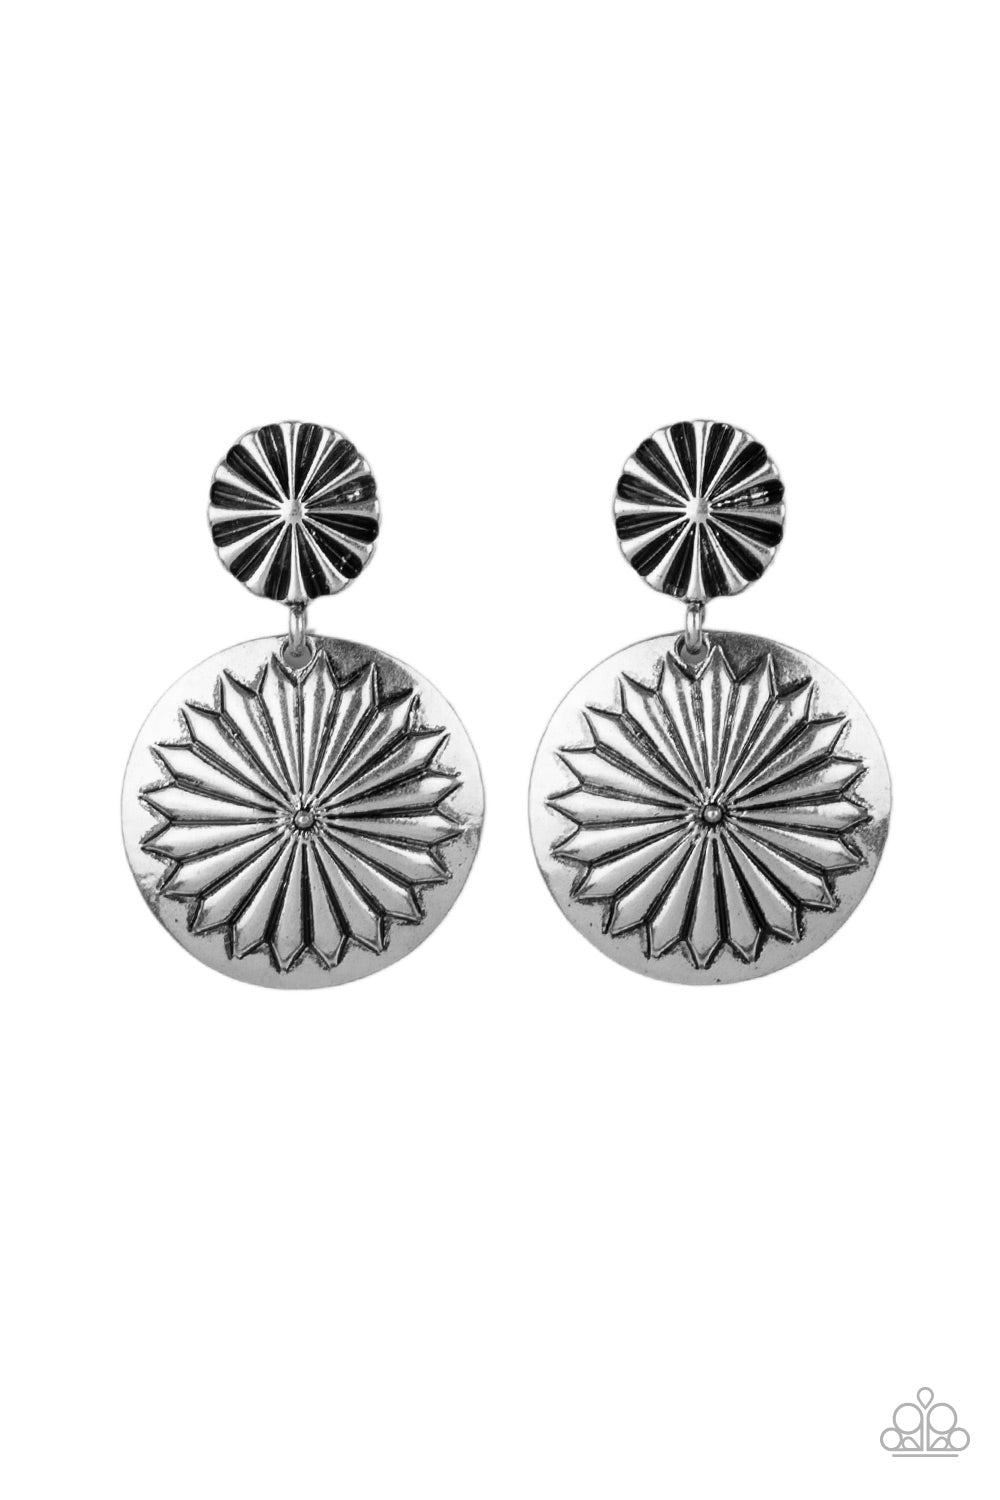 Fierce Florals - Silver Earrings